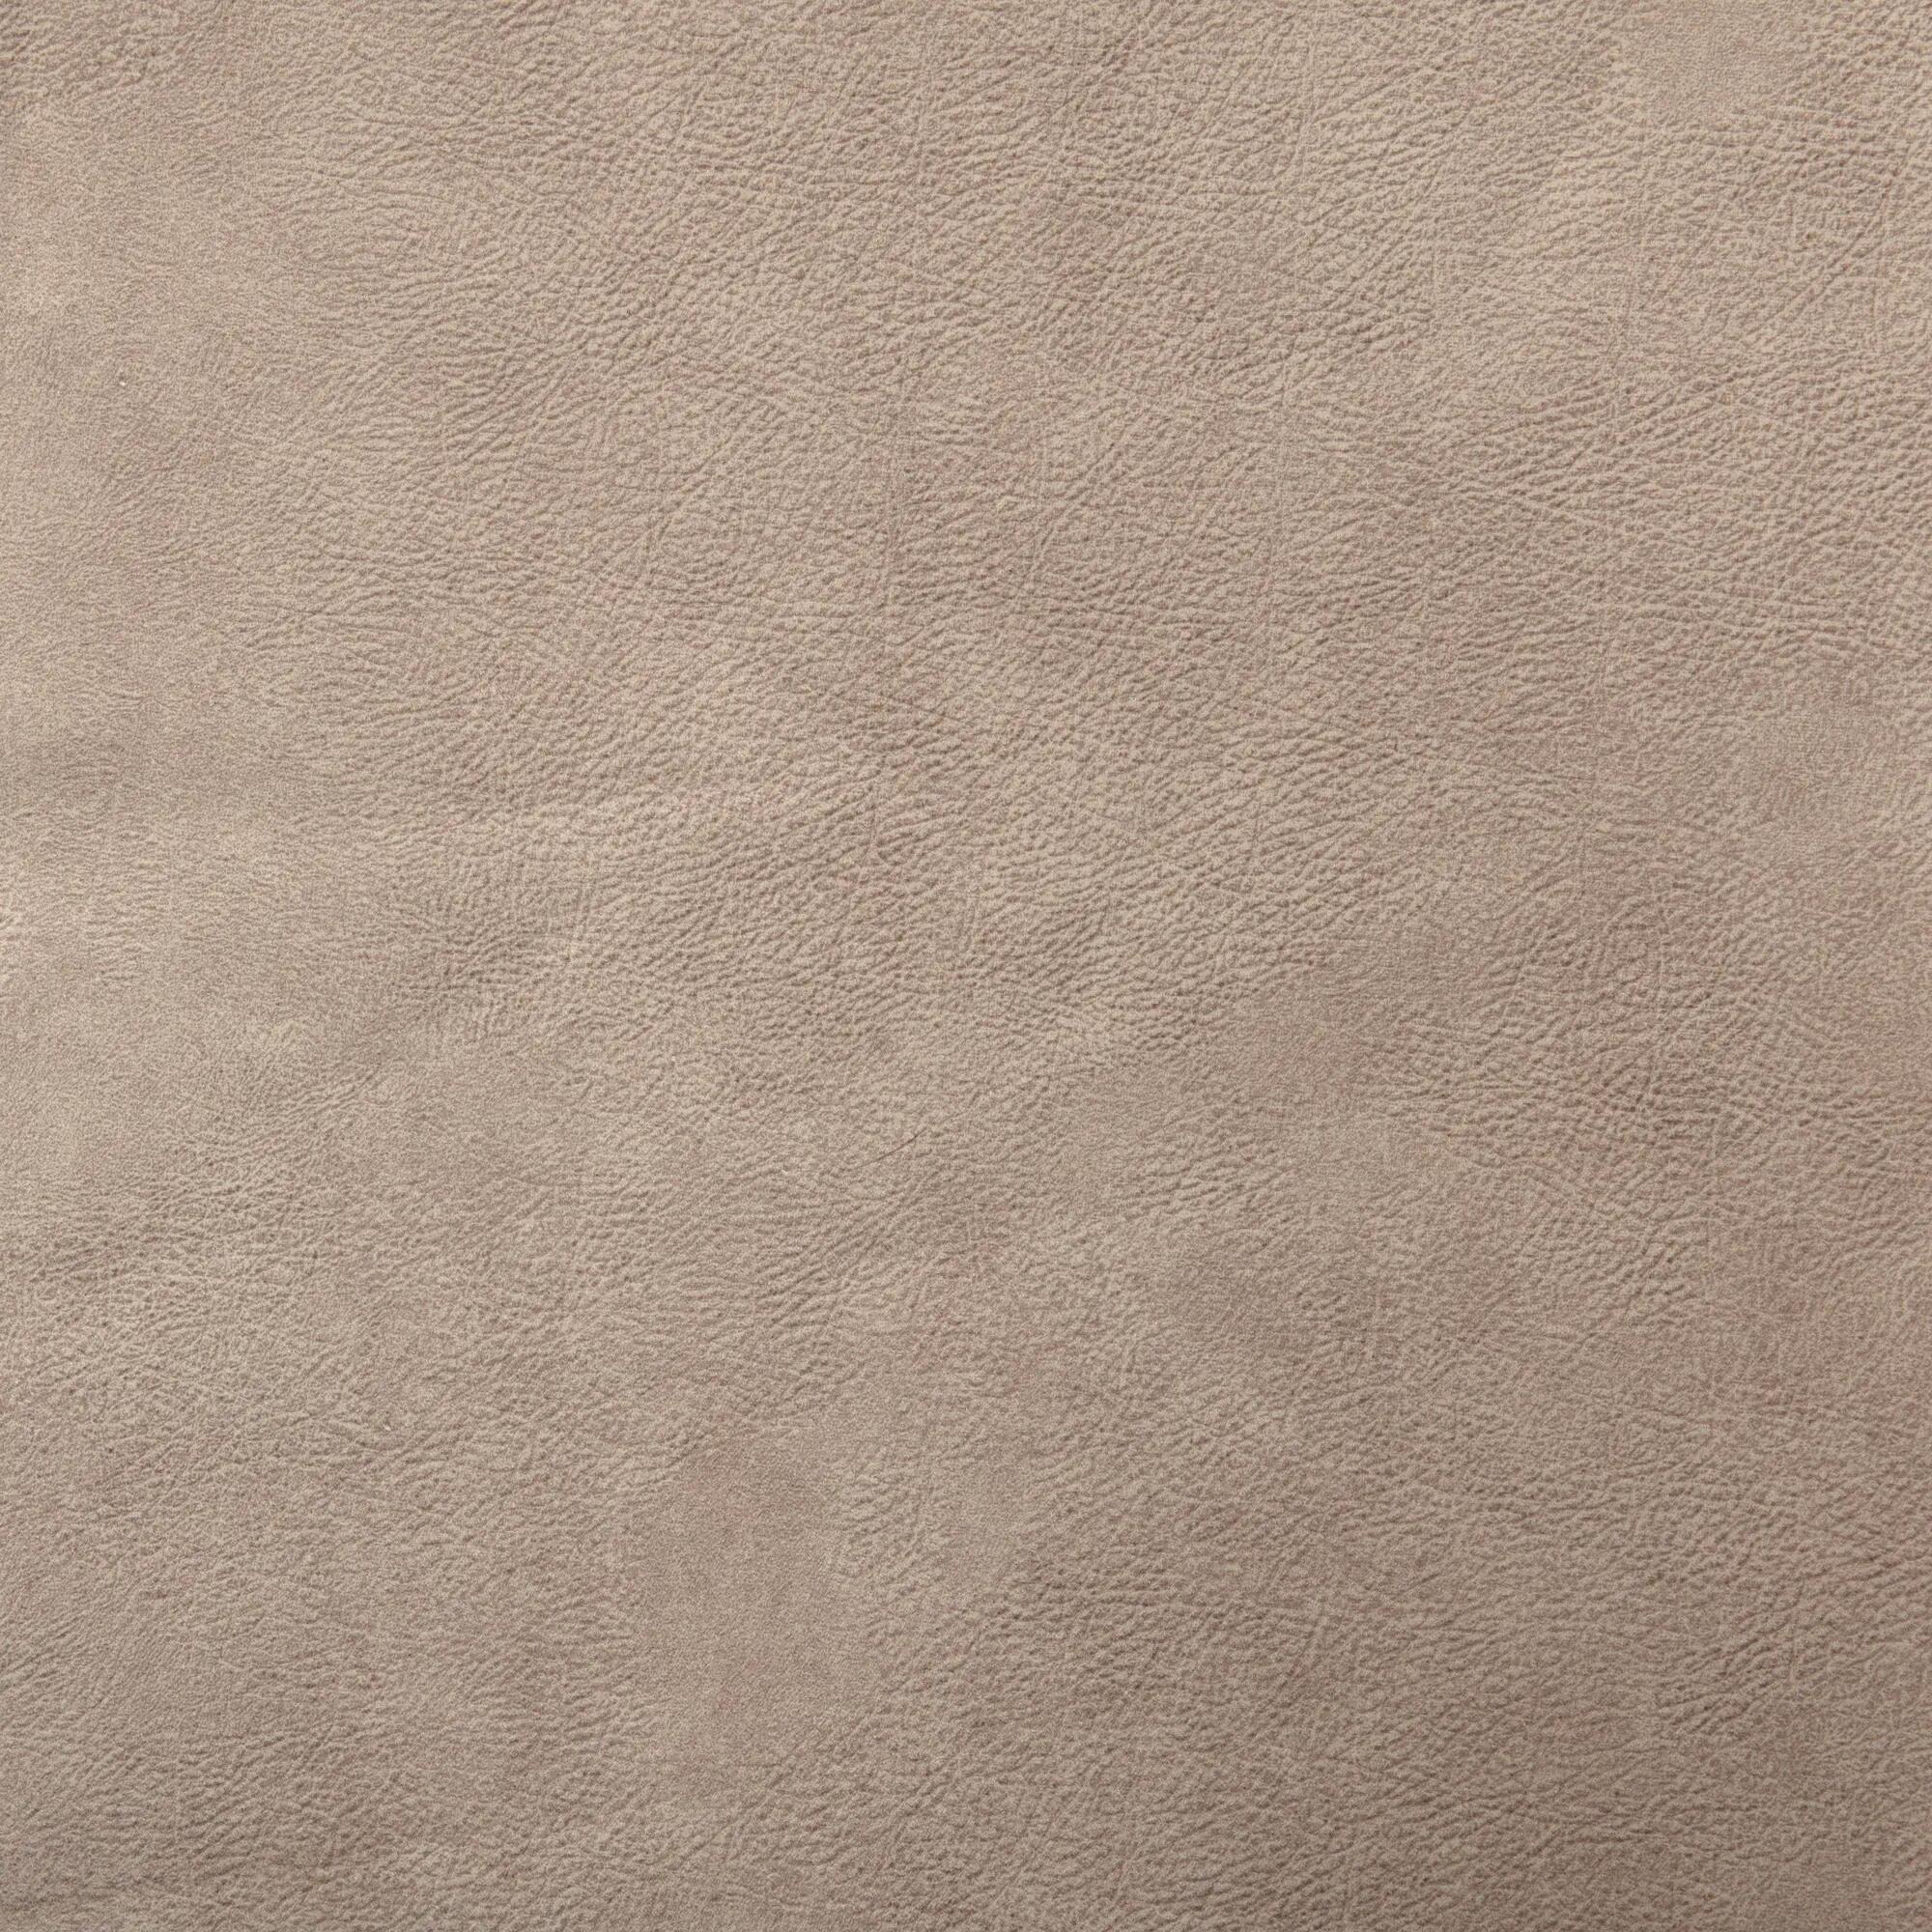 Tela al corte tapicería imitación piel vison nuez ancho 140 cm